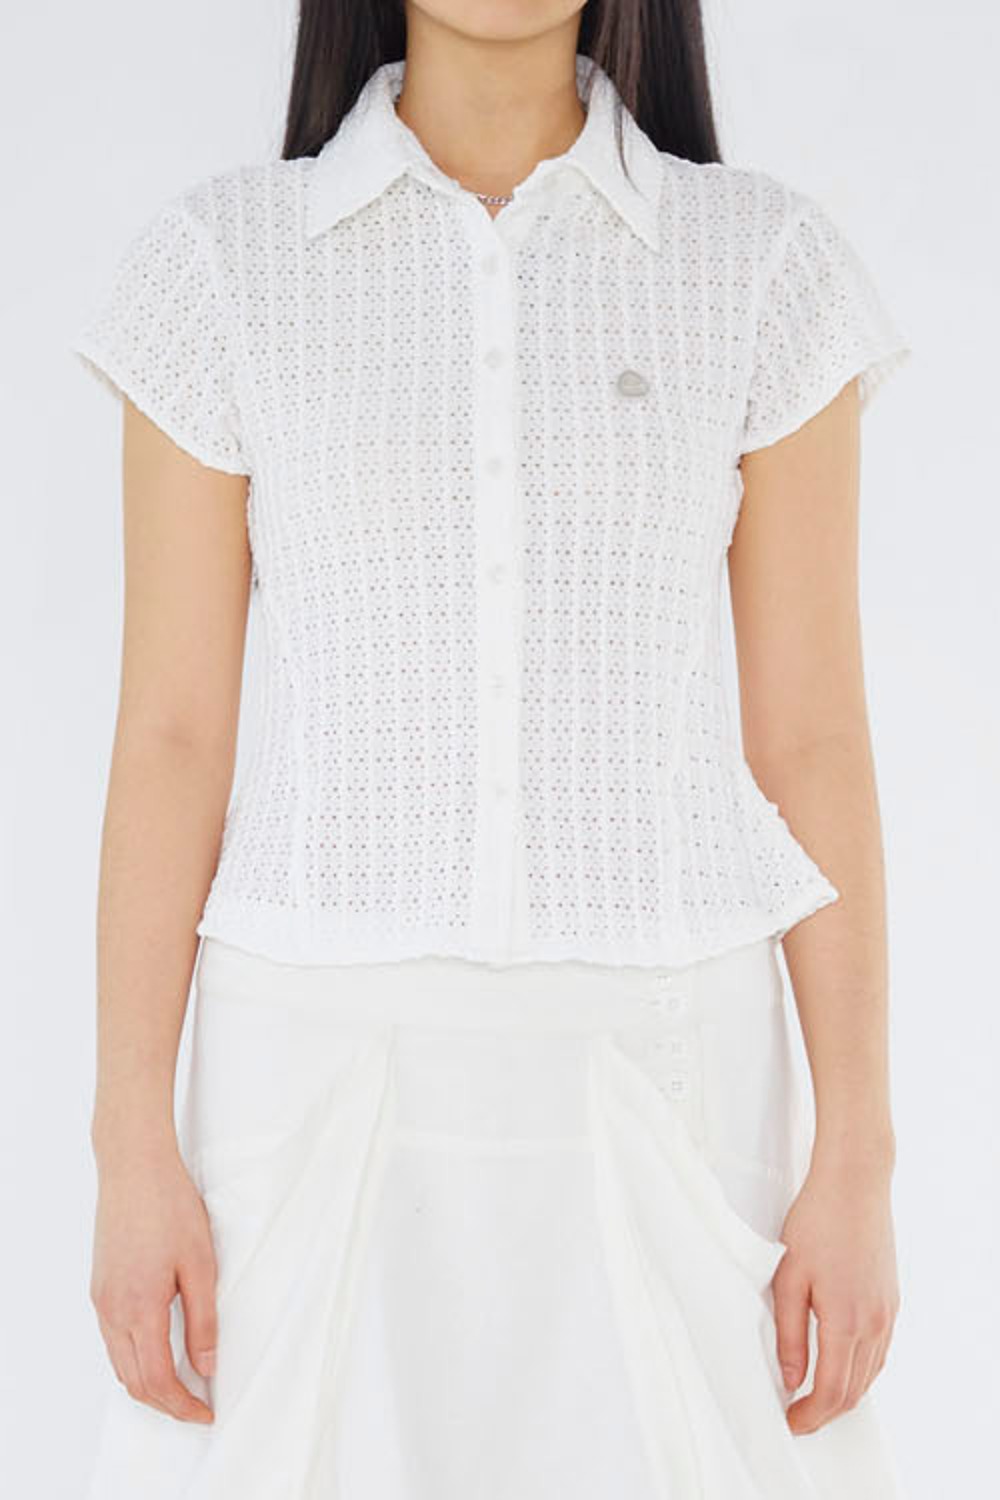 Lace Half Shirts-White